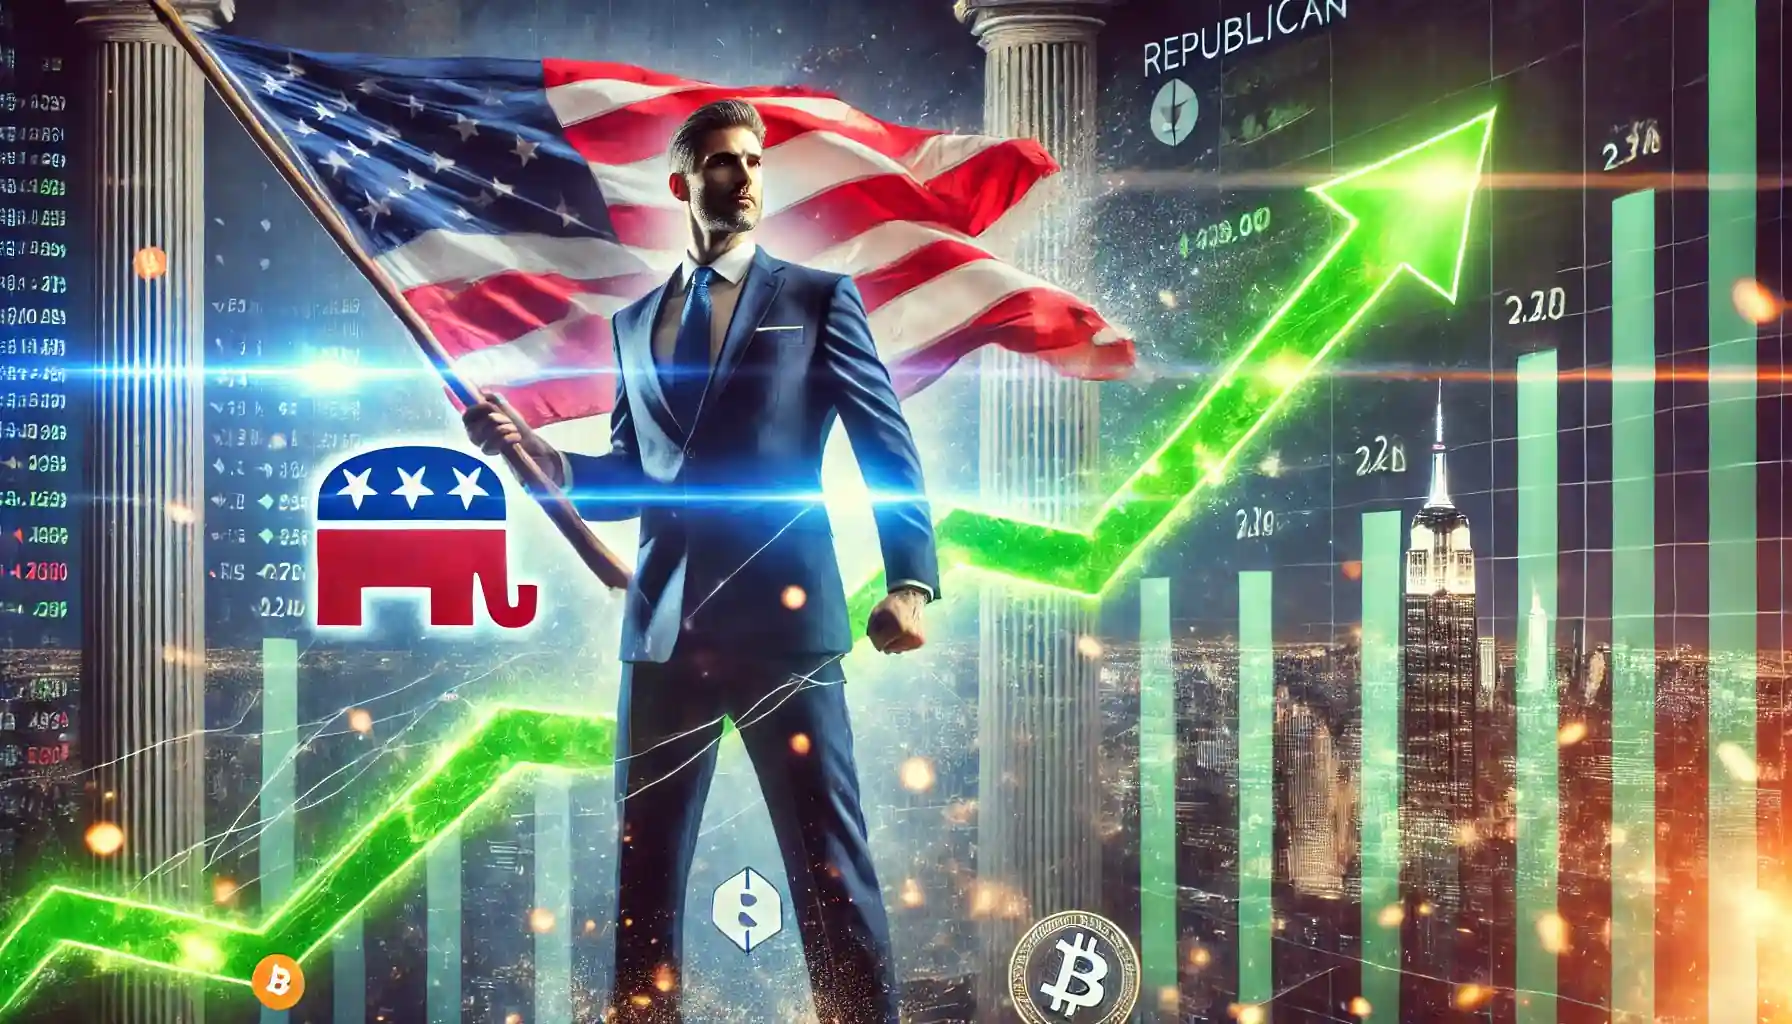 共和党の勝利が暗号通貨の急増を引き起こす可能性